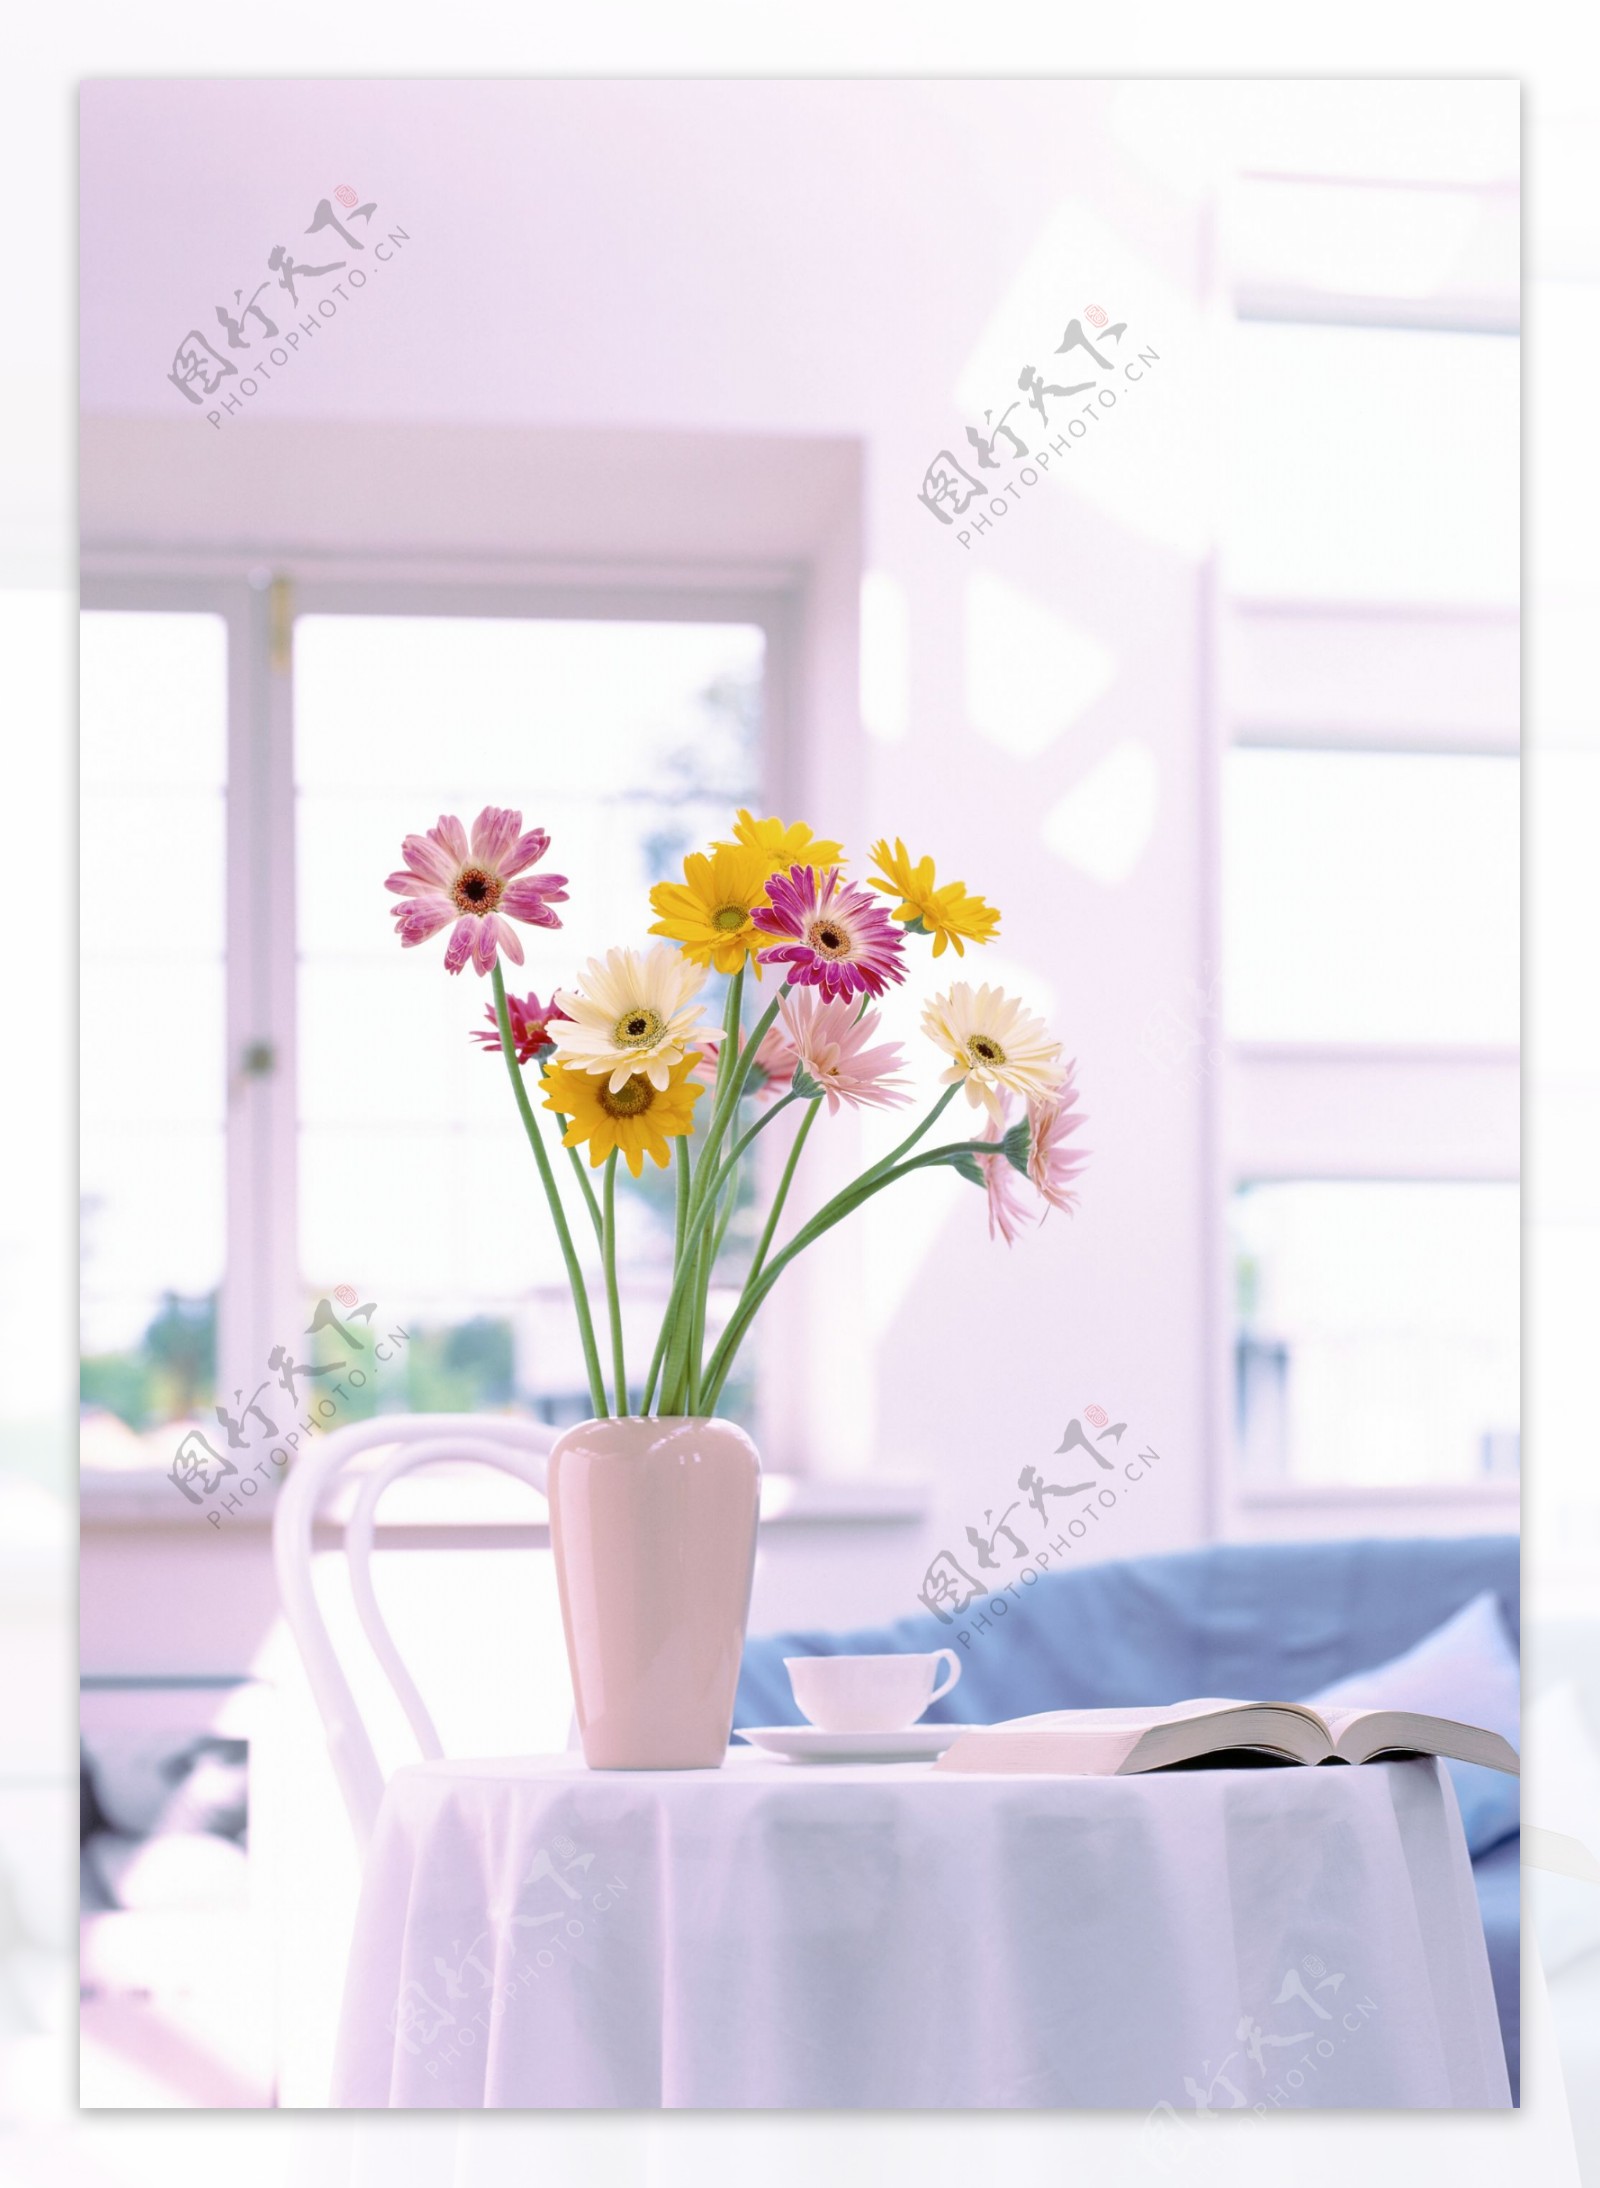 桌子上的鲜花和书籍图片